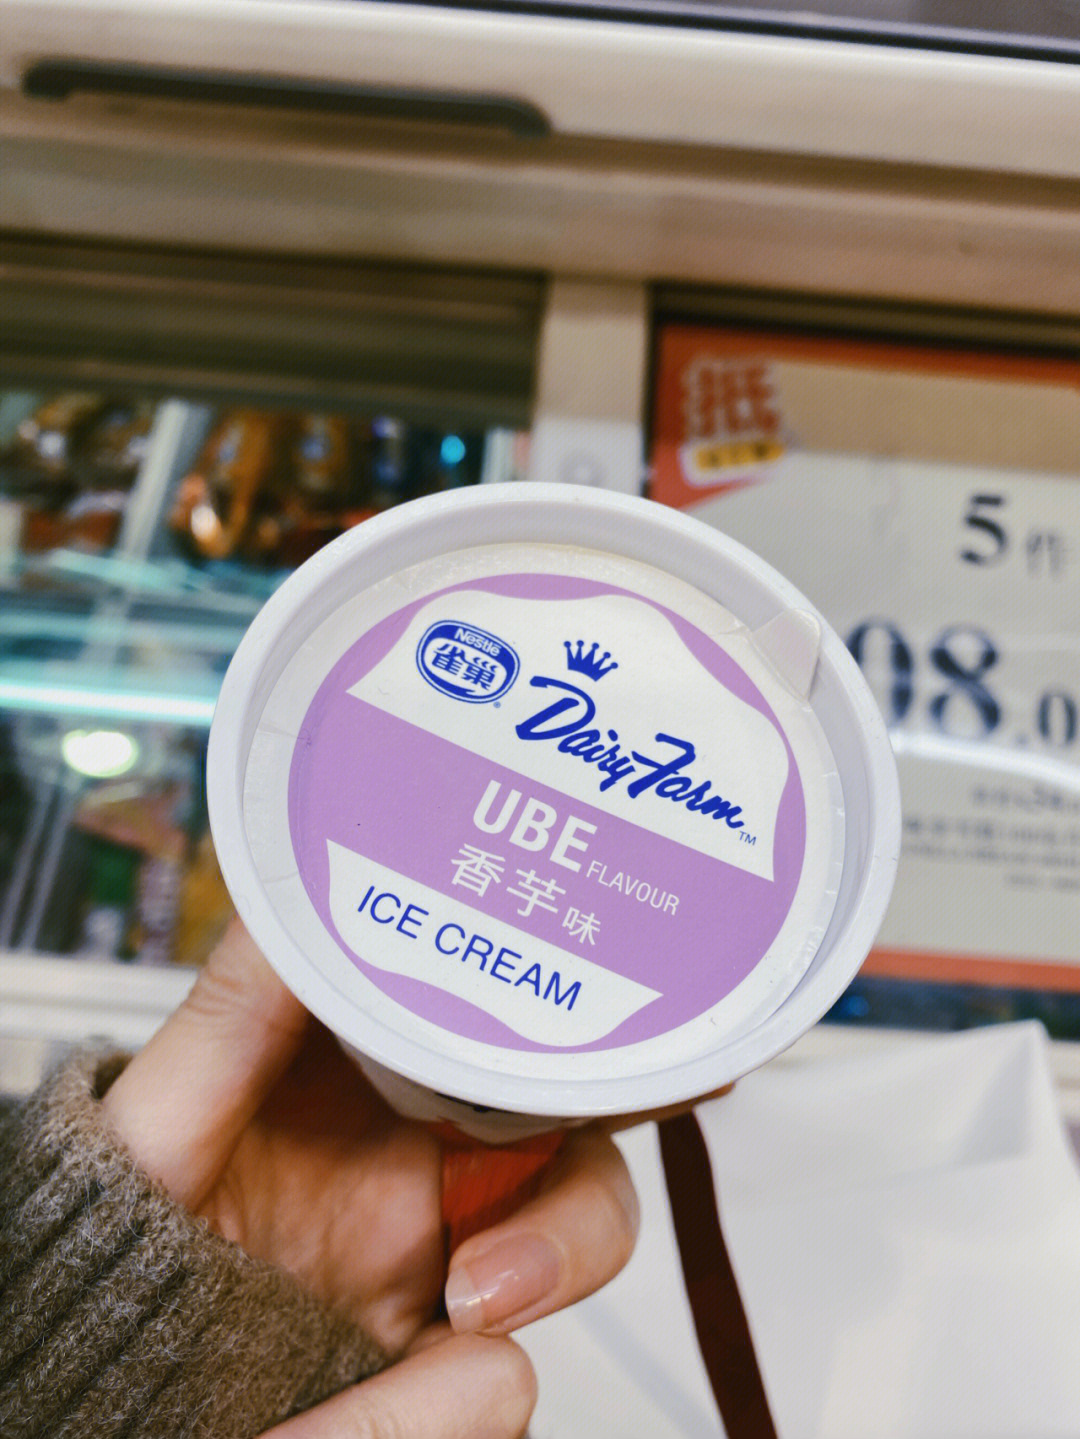 新大陆香芋味冰淇淋图片